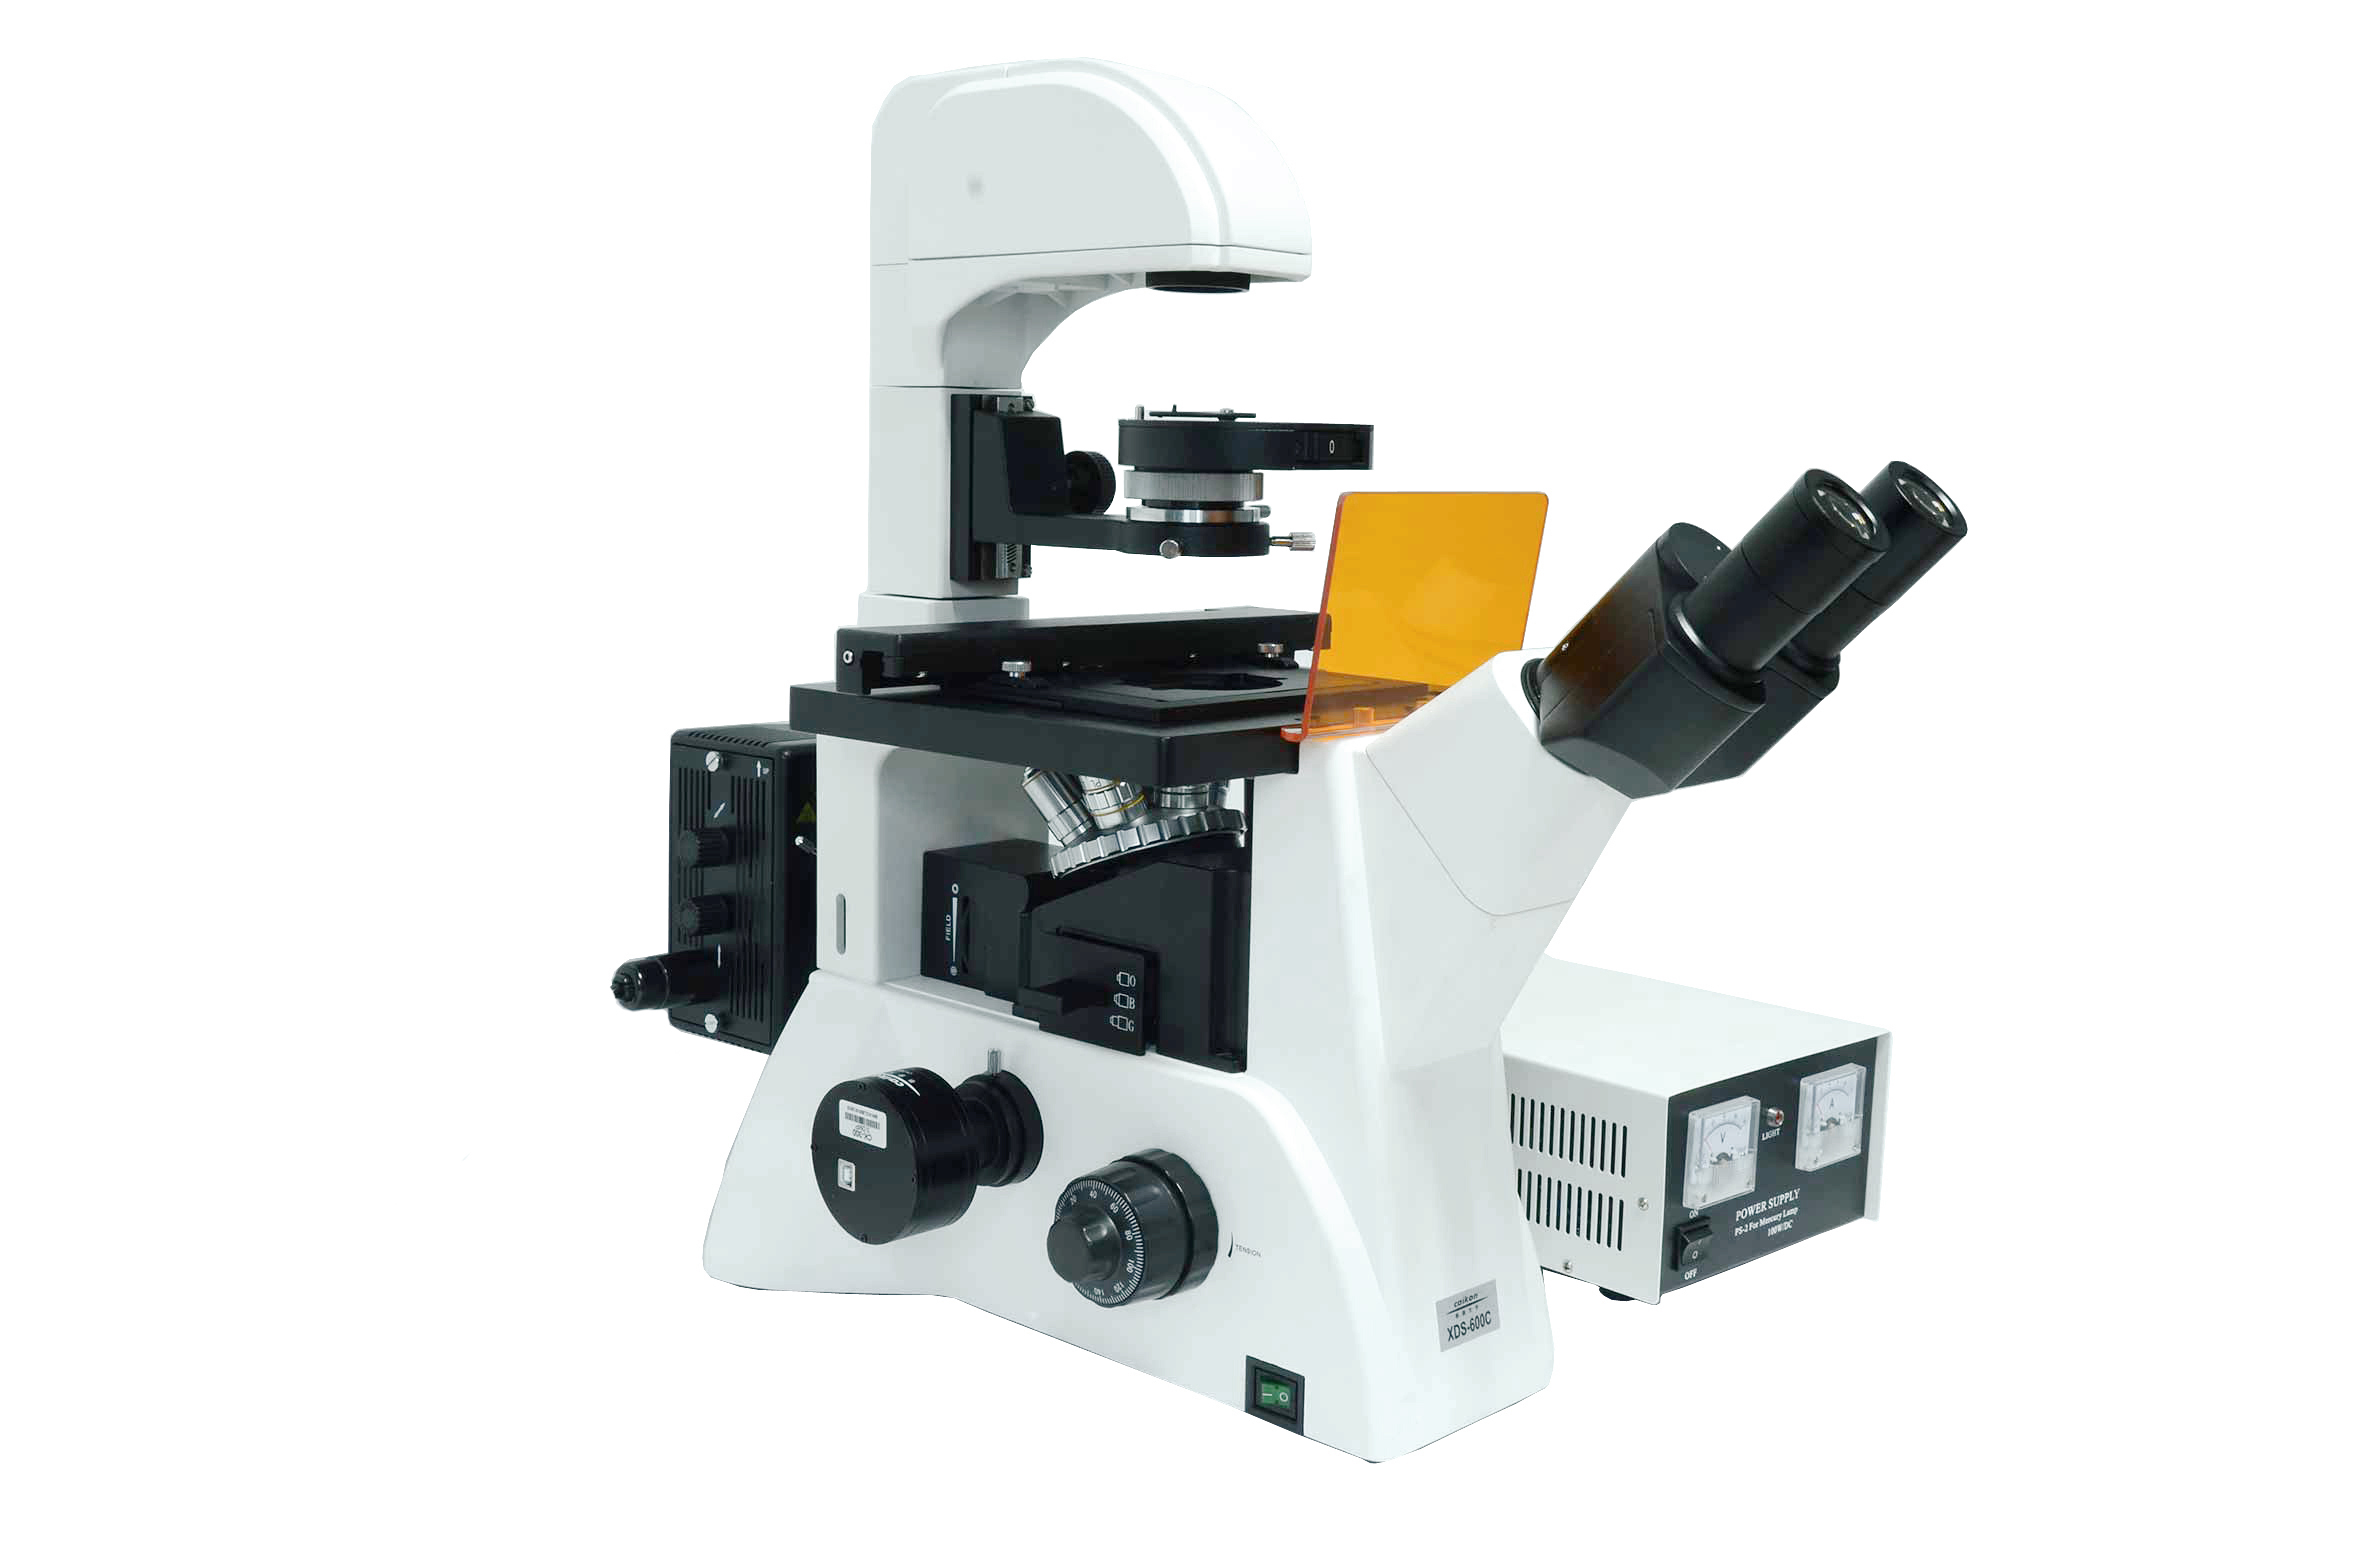 电脑型倒置荧光显微镜XDS-600C